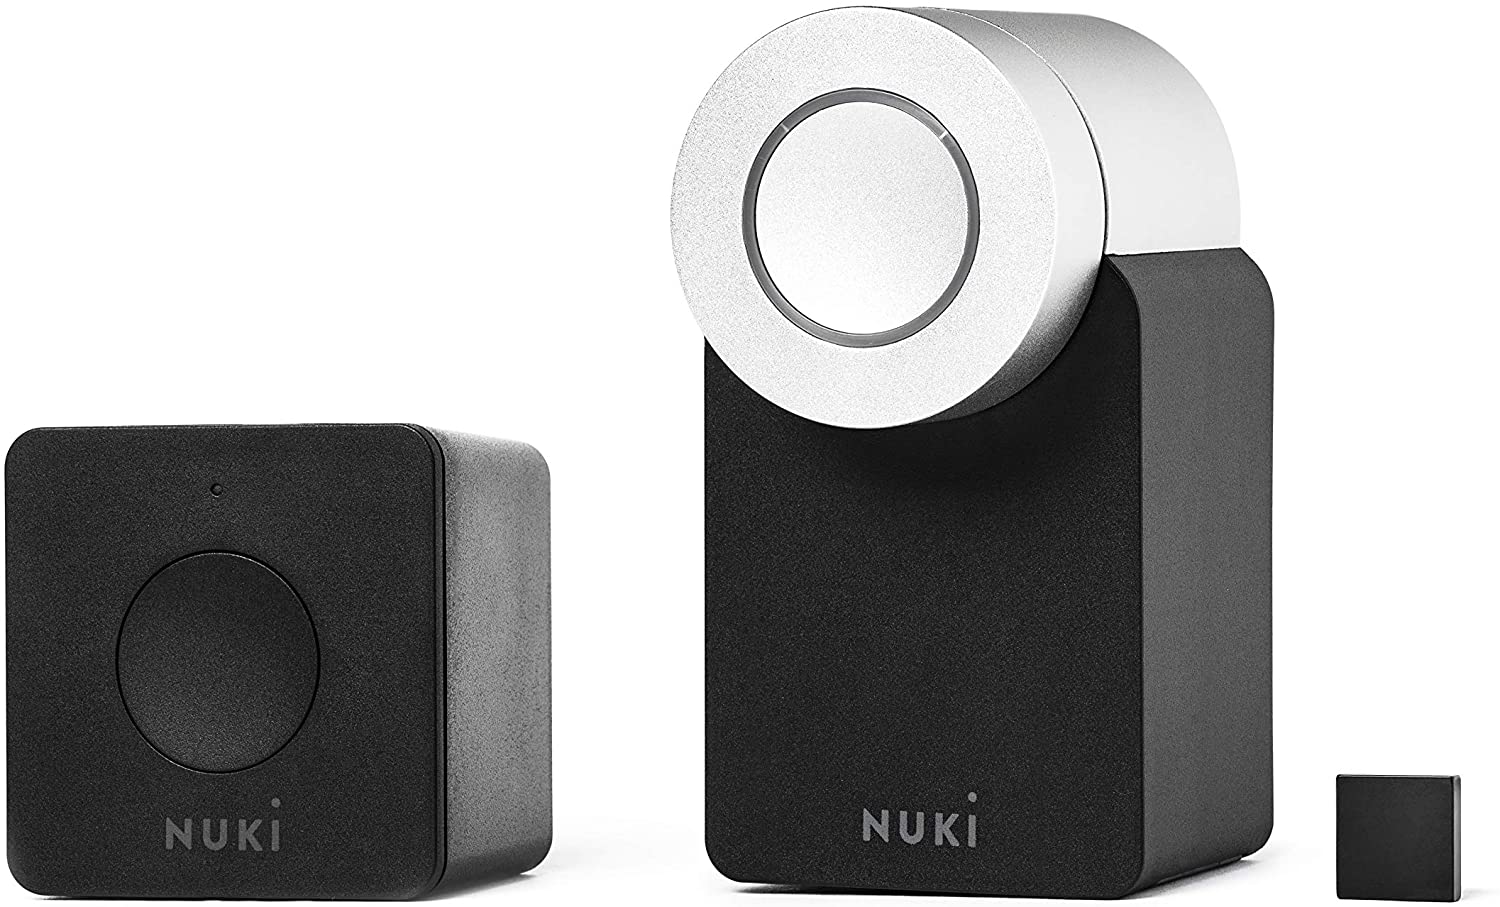 La foto di Nuki Combo 2.0, un prodotto per la domotica e smart home